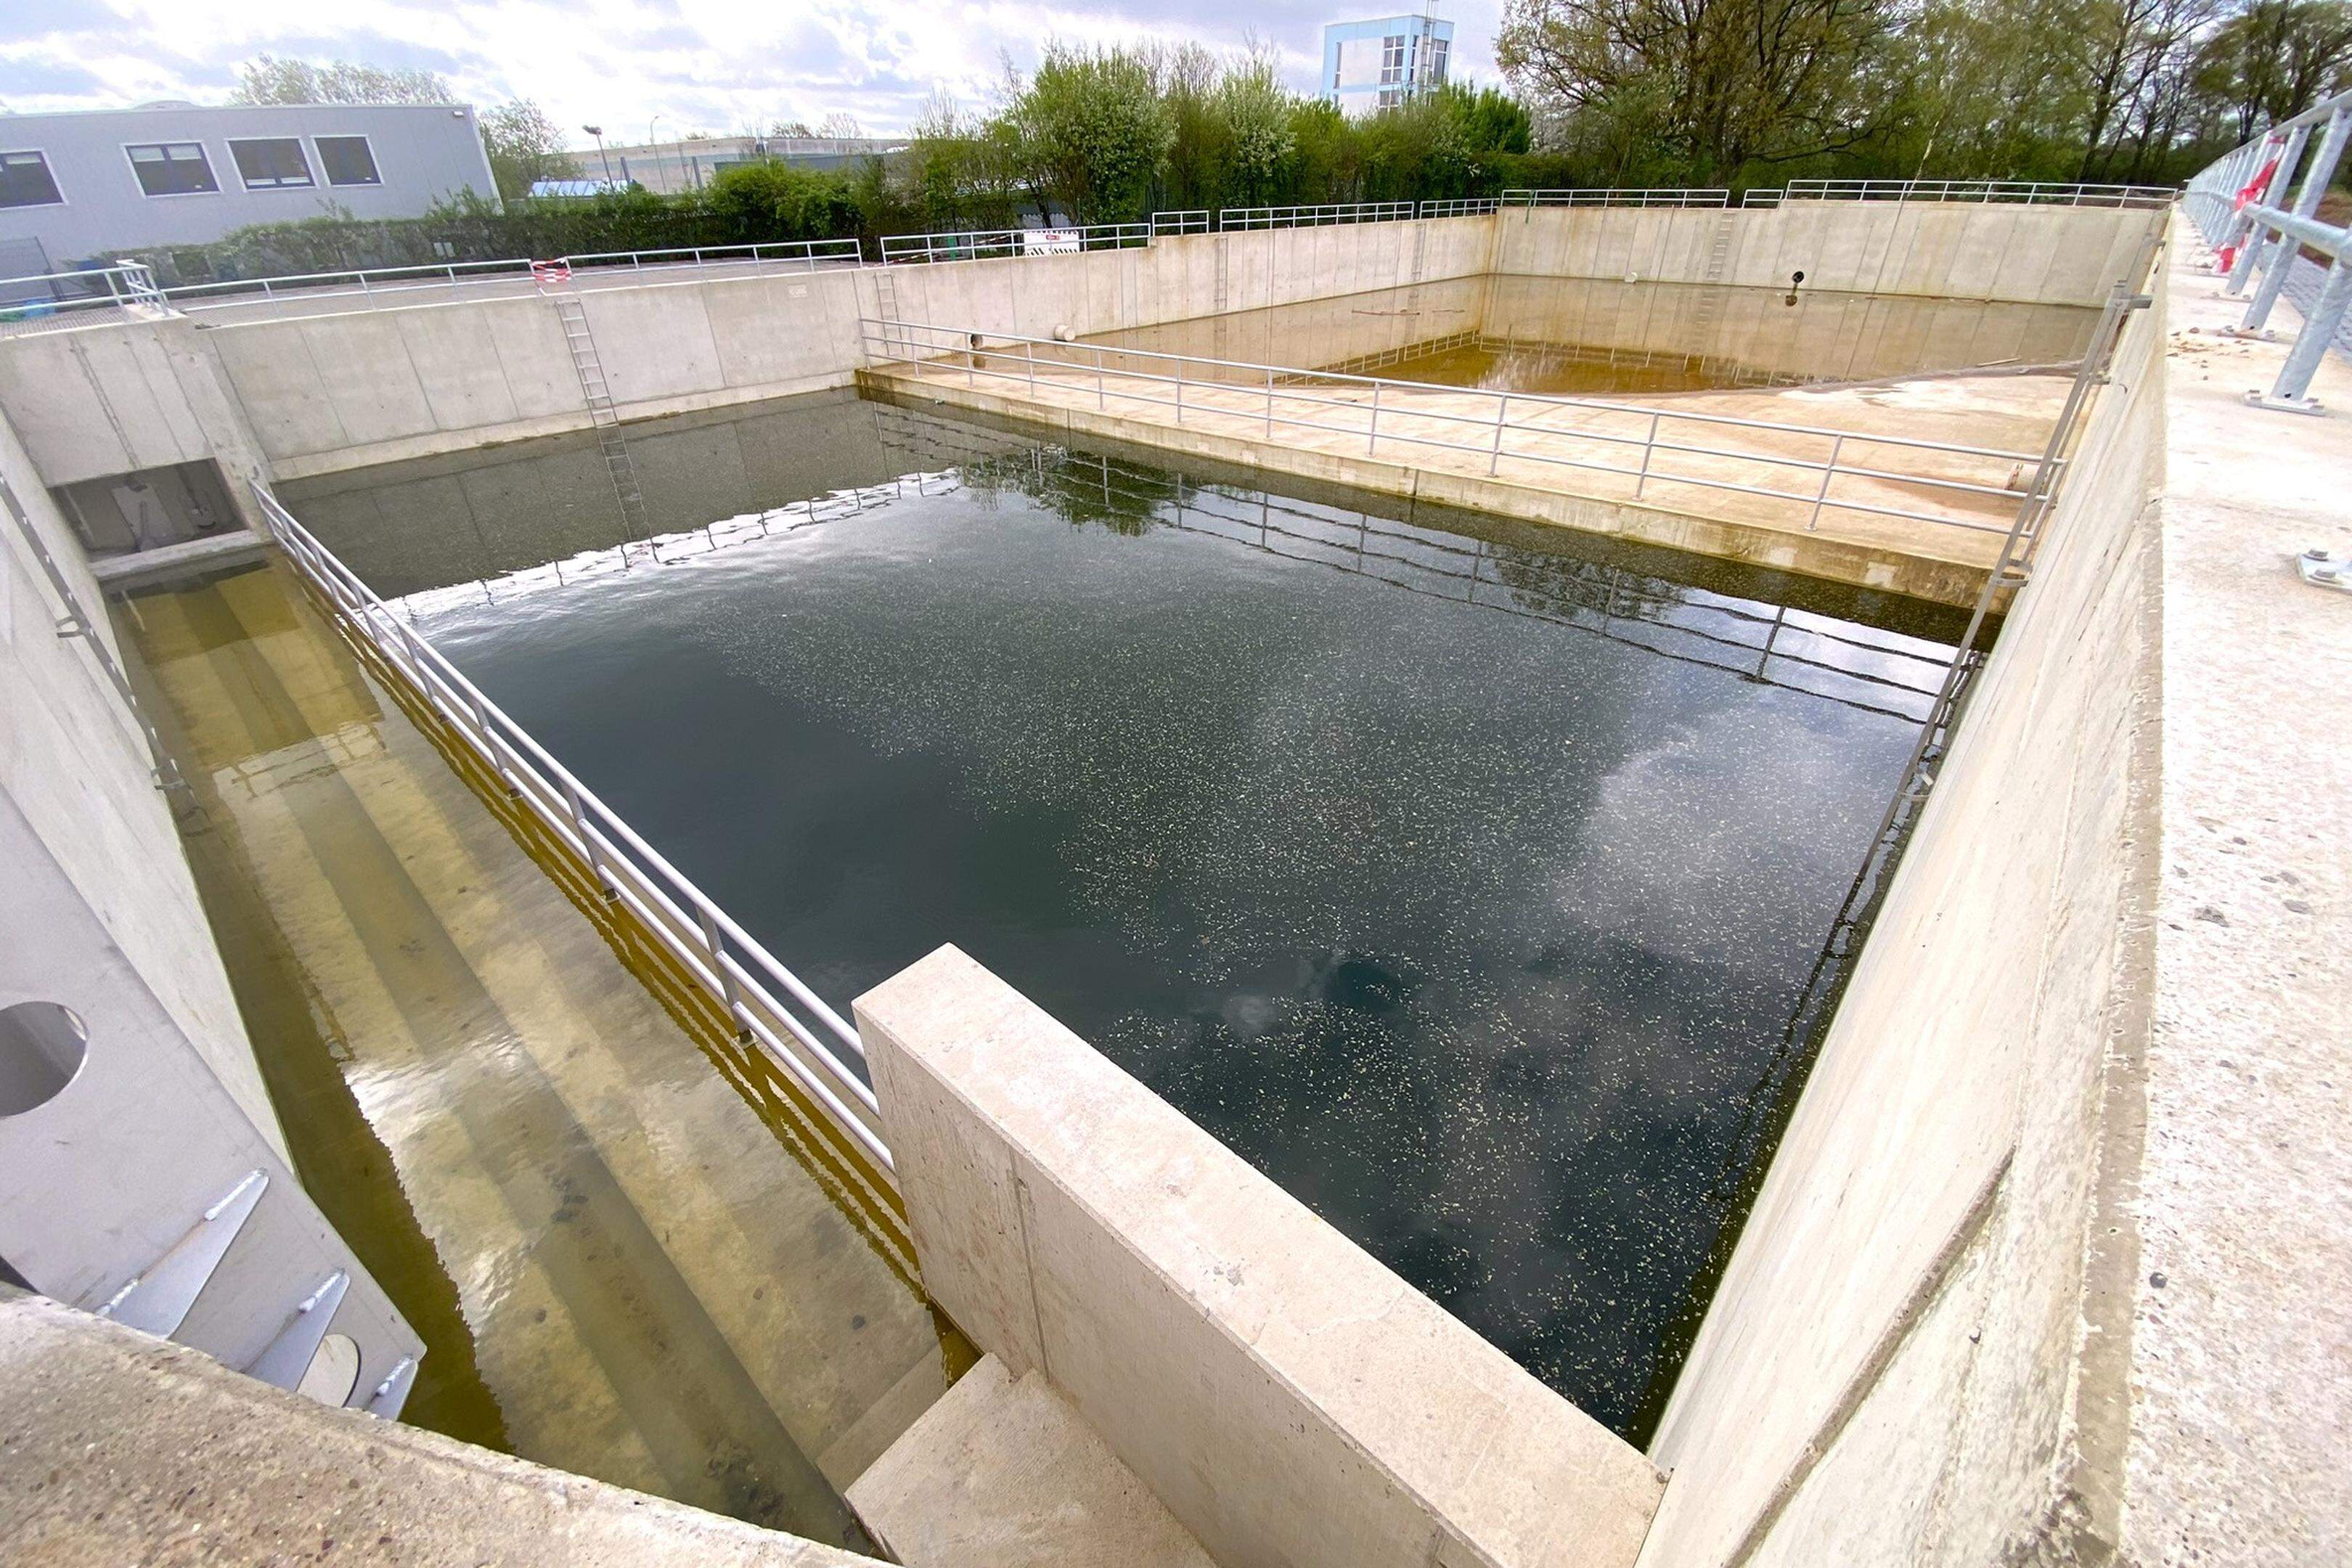 Löcher werden in das neue Becken für Löschwasser gebohrt, damit Beton in den Untergrund gegossen werden kann. Anschließend soll 120 Zentimeter hoch Beton ins Becken gefüllt werden.